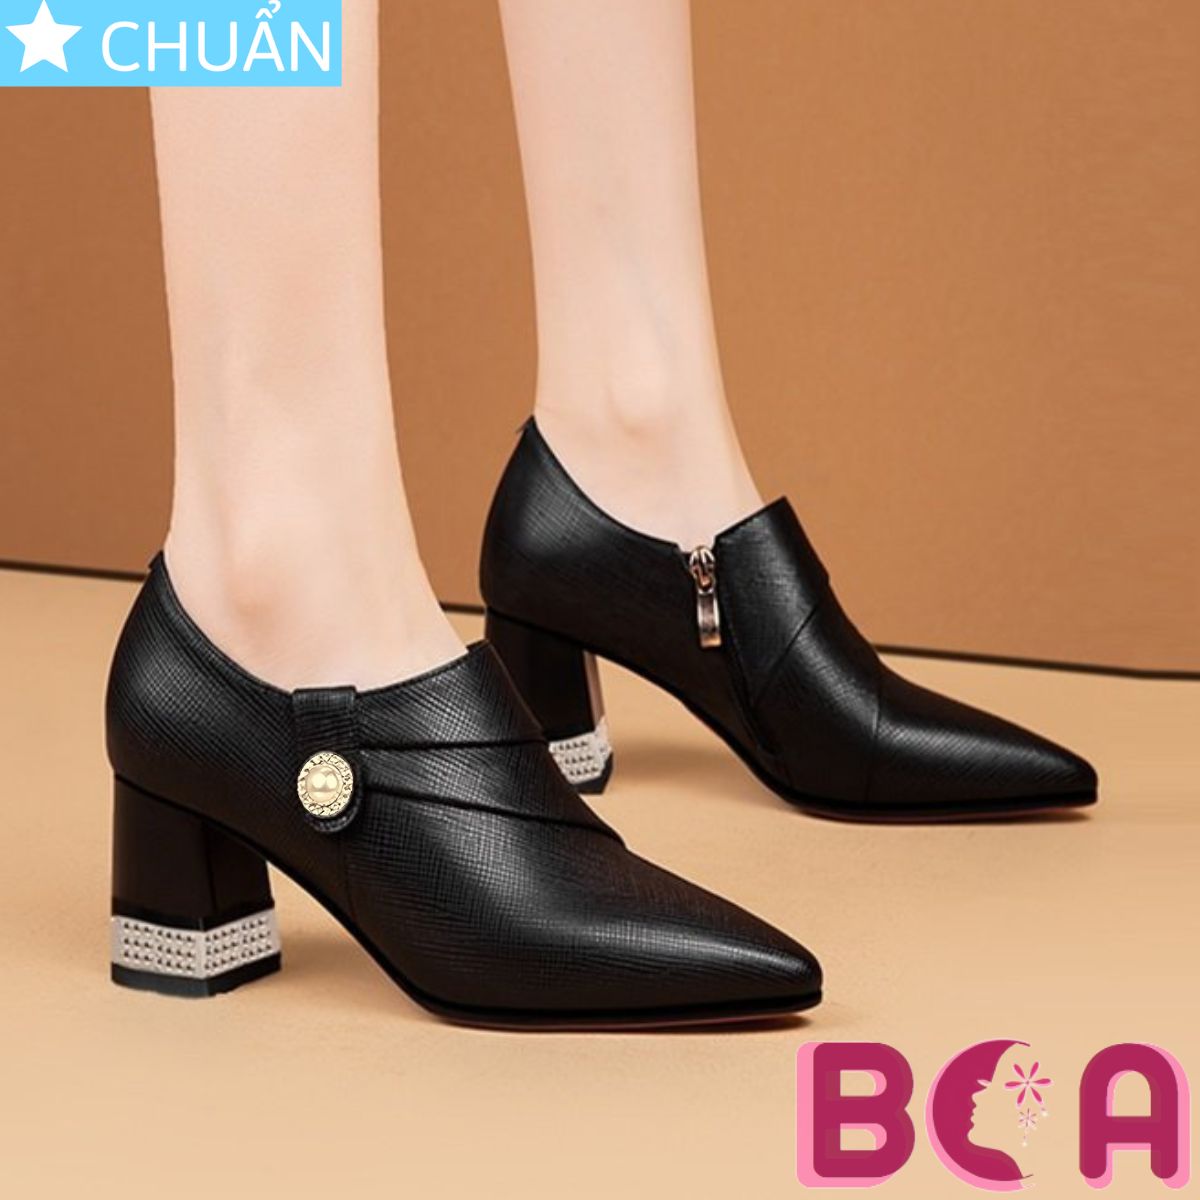 Giày bốt nữ cổ ngắn 5p RO609 màu đen, bề mặt nhám thời trang kết hợp điểm nhấn sang trọng tạo nên thiết kế thời thượng